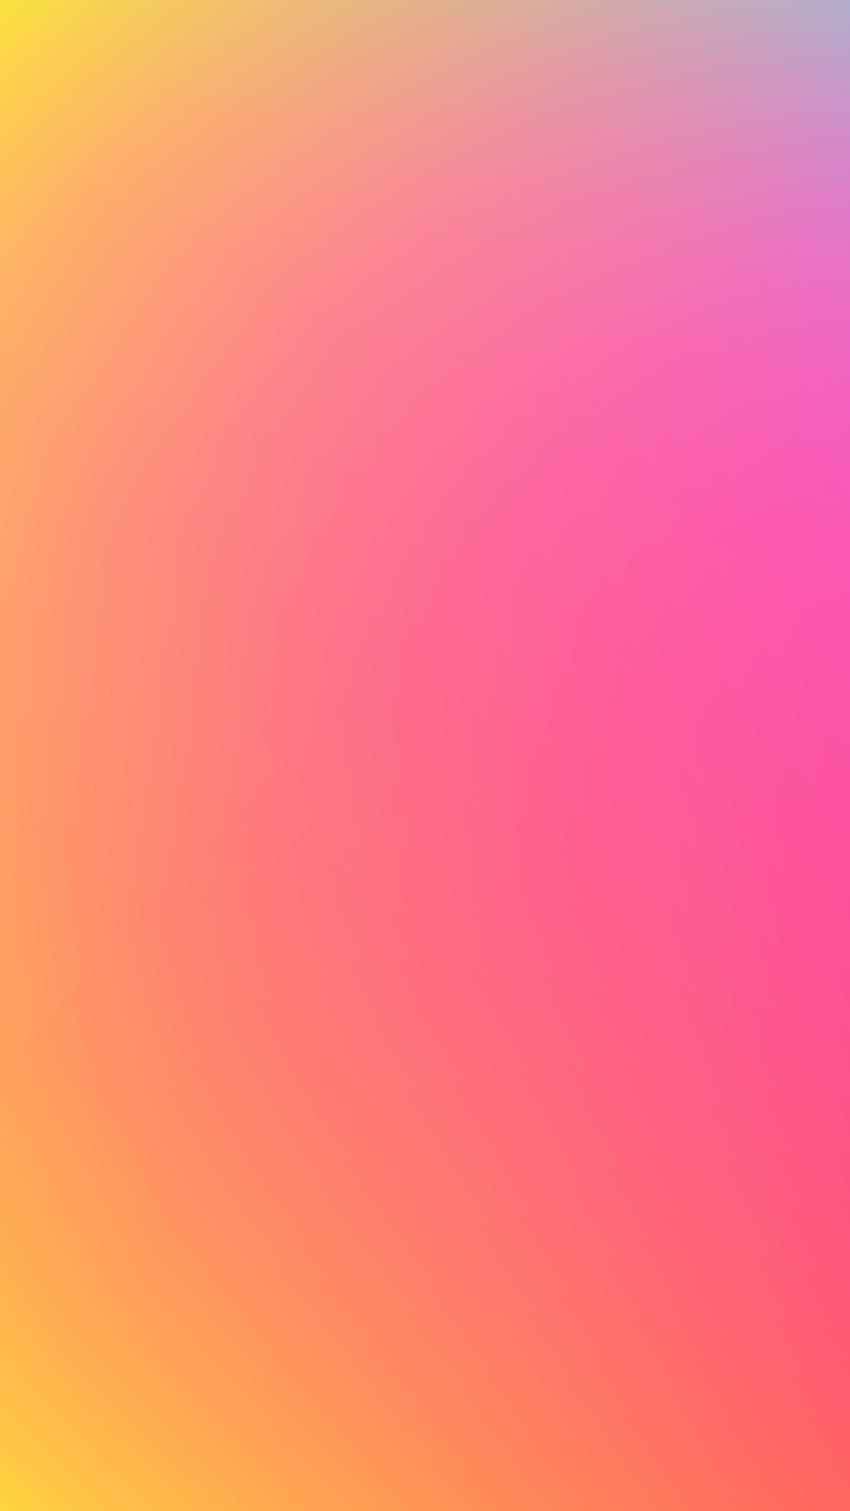 Đi đến Instagram và tìm kiếm hình nền màu hồng tình yêu này, người dùng sẽ chẳng thể rời mắt khỏi nó. Màu hồng tươi sẽ đưa họ vào tâm trạng tốt nhất cho ngày của họ.